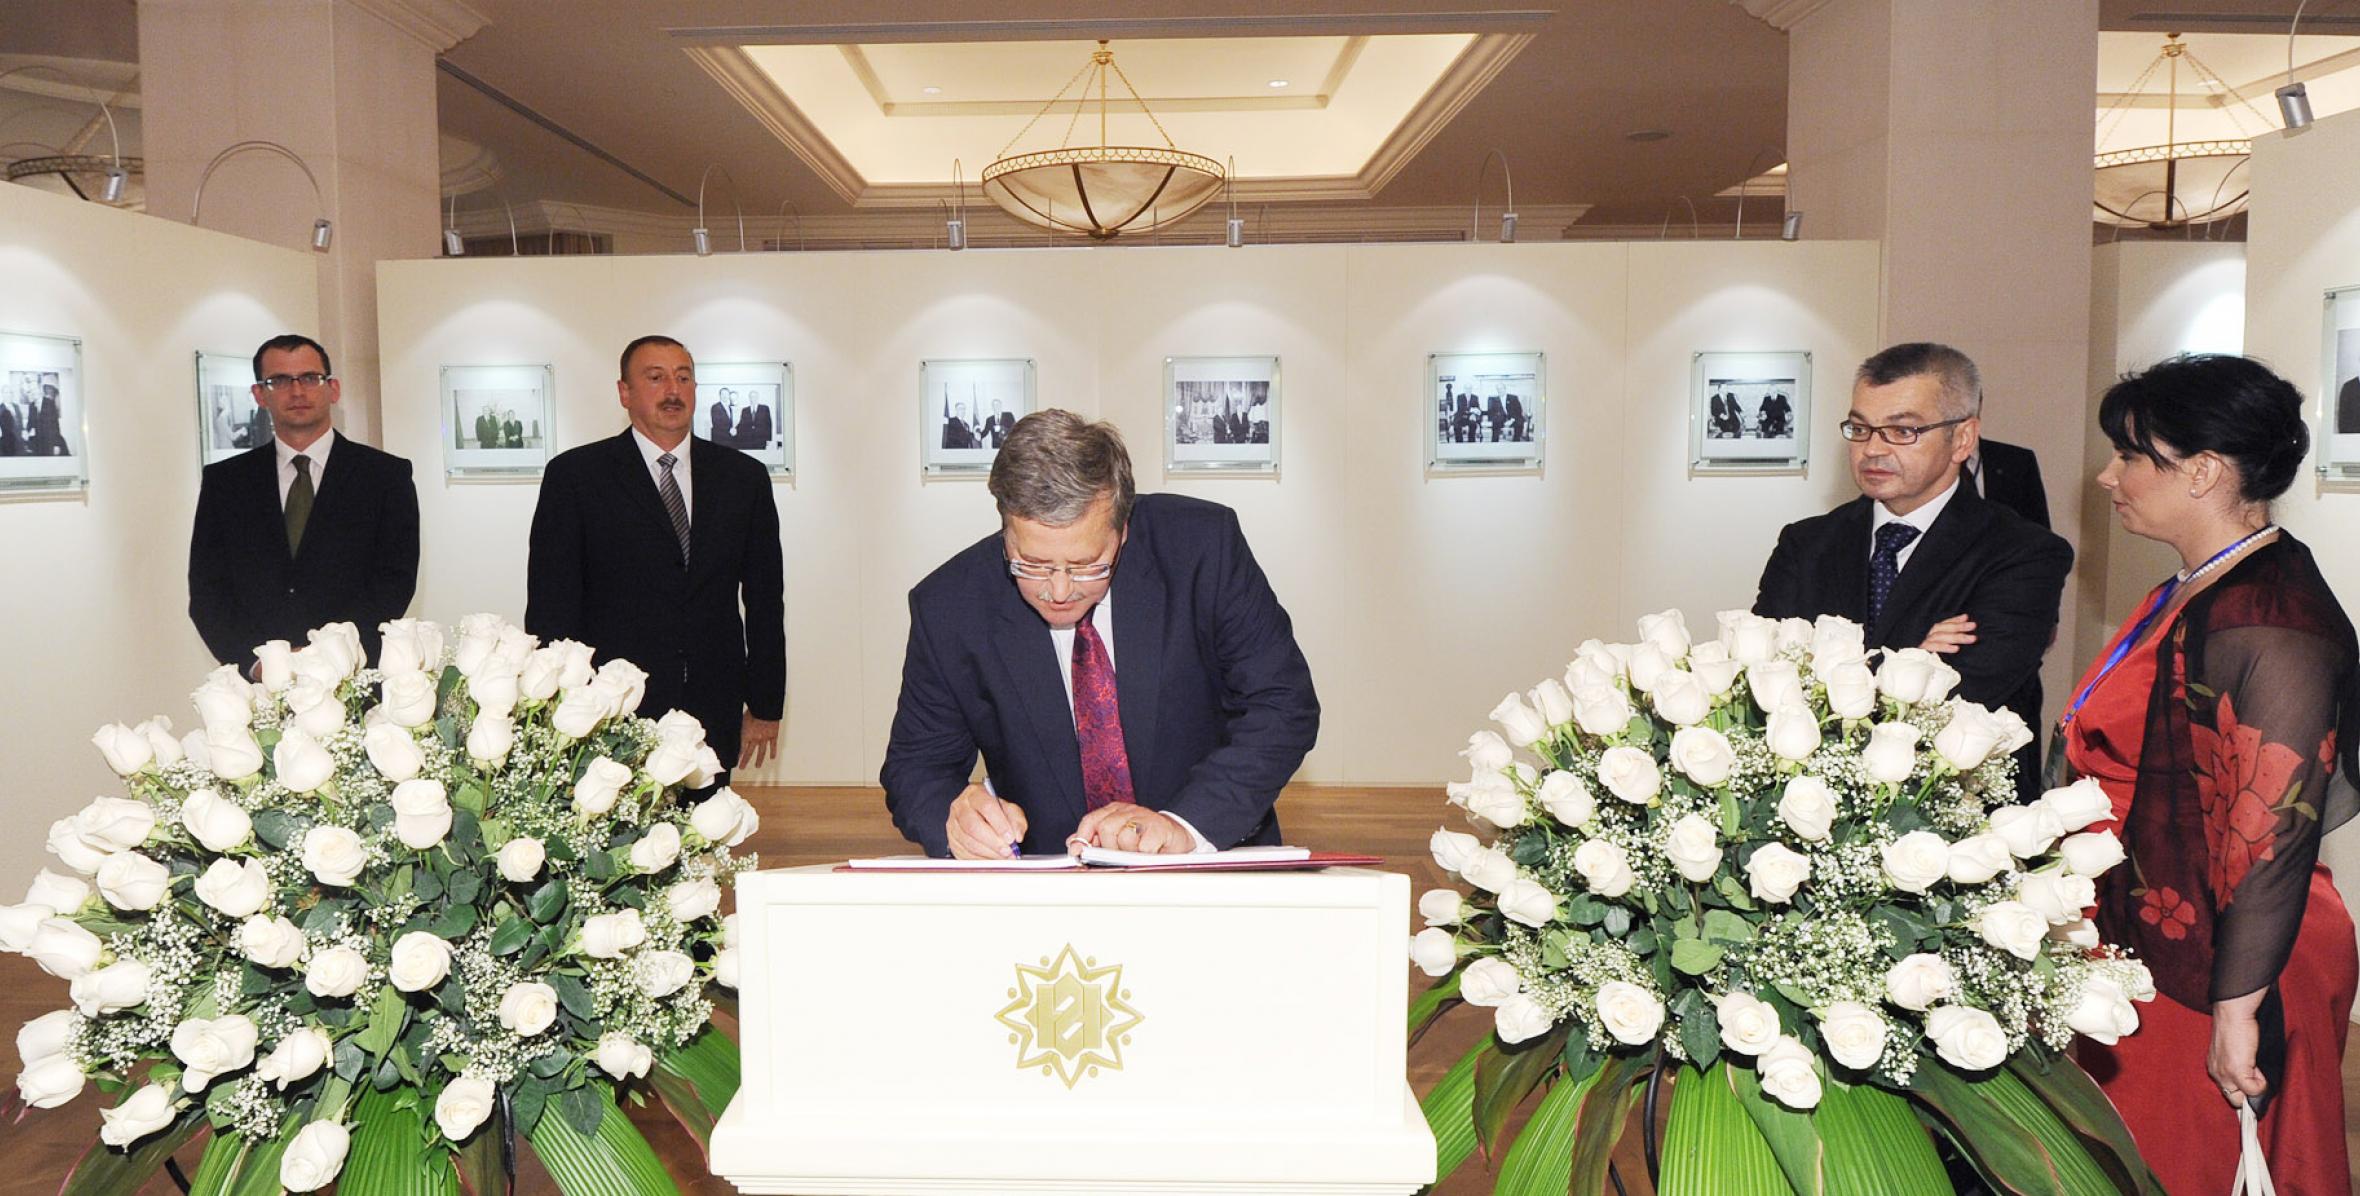 Polish President Bronislaw Komorowski visited the Heydar Aliyev Foundation